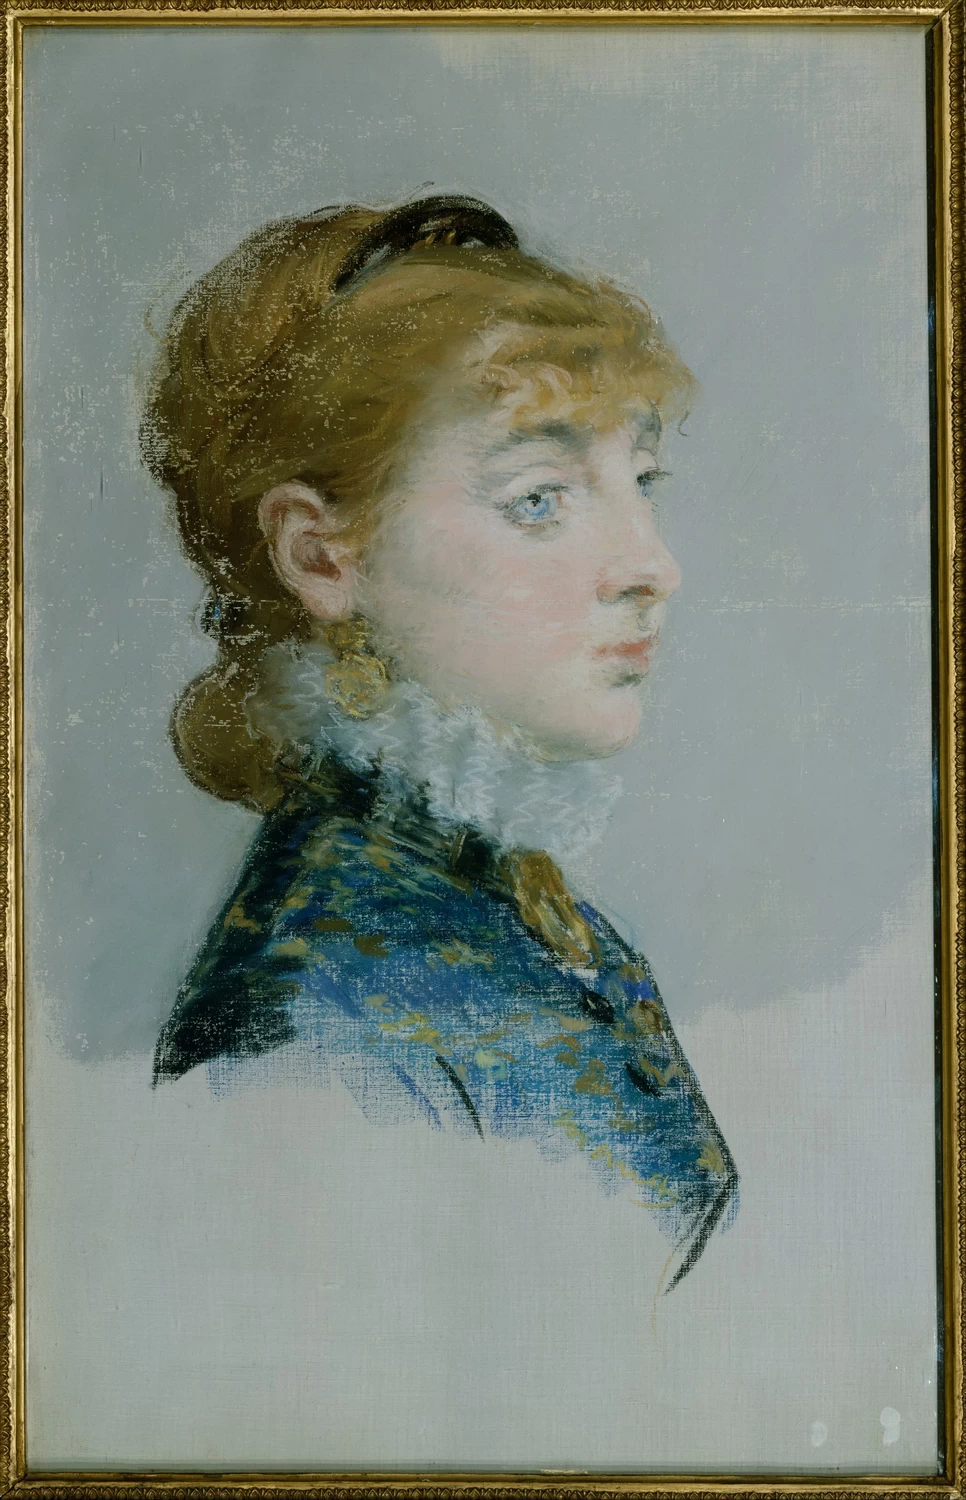 272-Édouard Manet, Ritratto della signorina Emilie-Louise Delabigne (1848-1910), chiamata Valtesse de la Bigne, 1879-Metropolitan Museum of Art, New York 